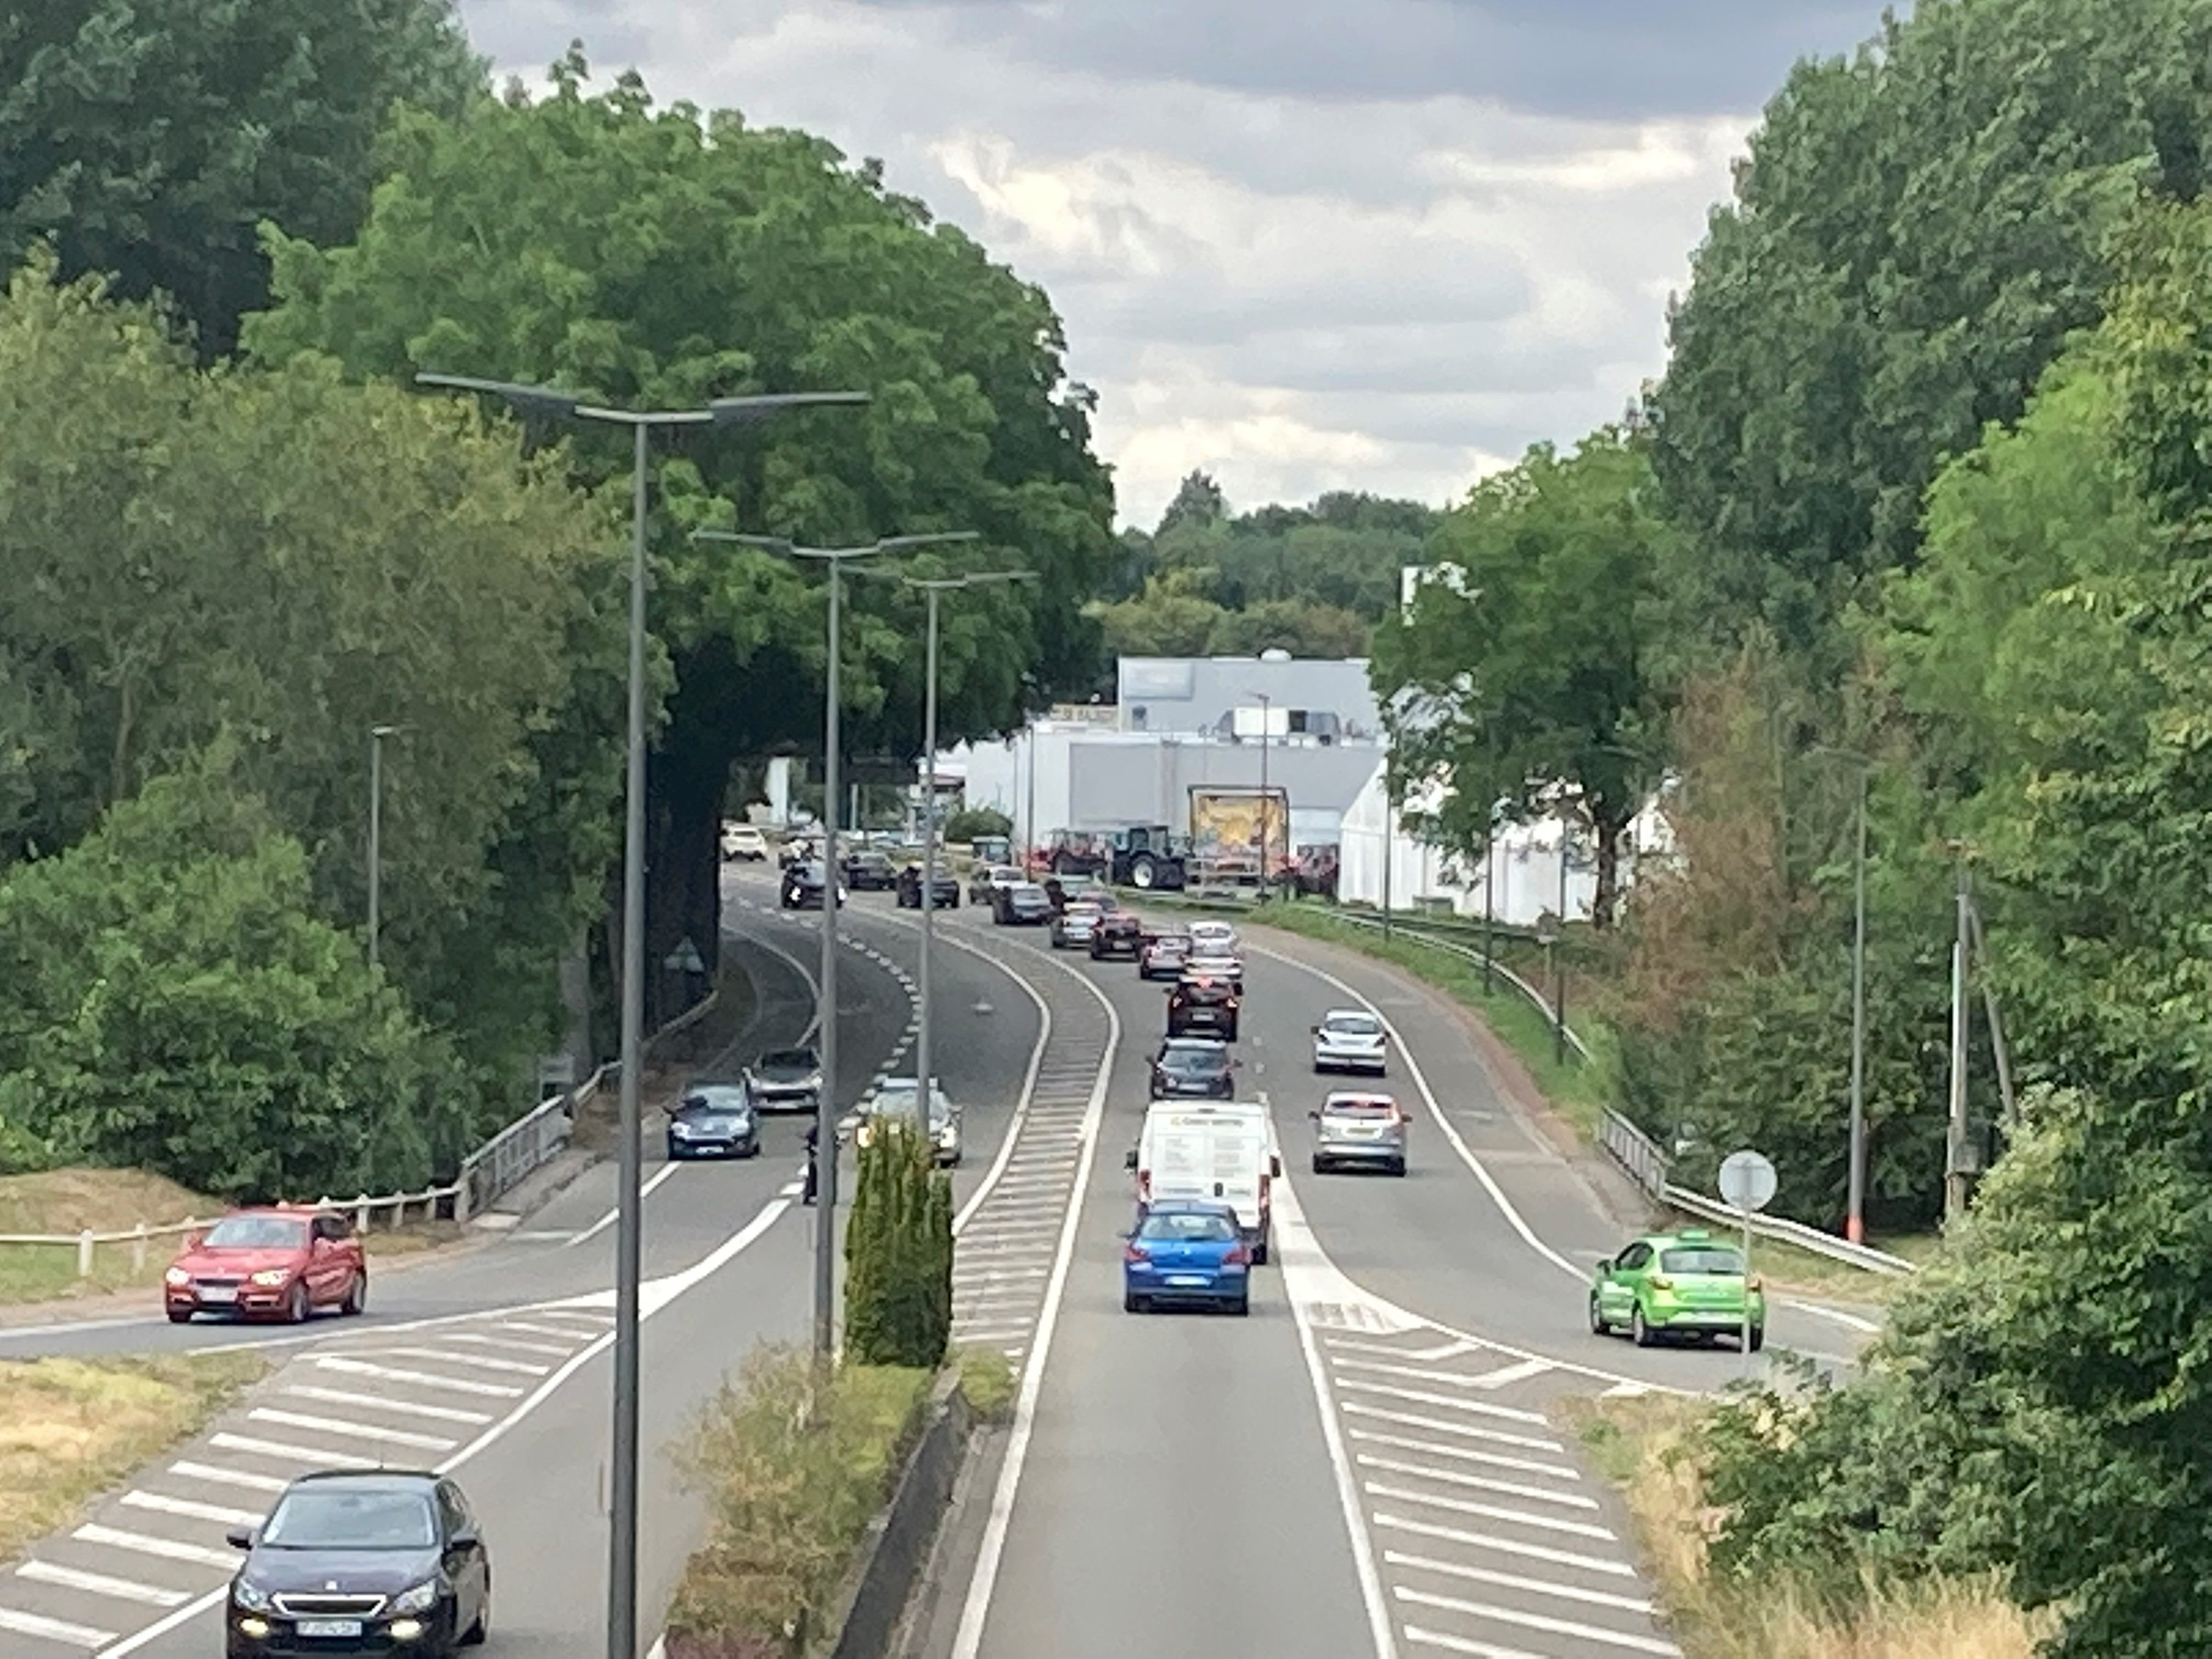 Beauvais, le 26 juillet. En cette période de vacances, les embouteillages dus au report de la circulation en raison de la fermeture de l'avenue Blaise-Pascal restent présents, même s'ils sont moins denses. LP/P.C.